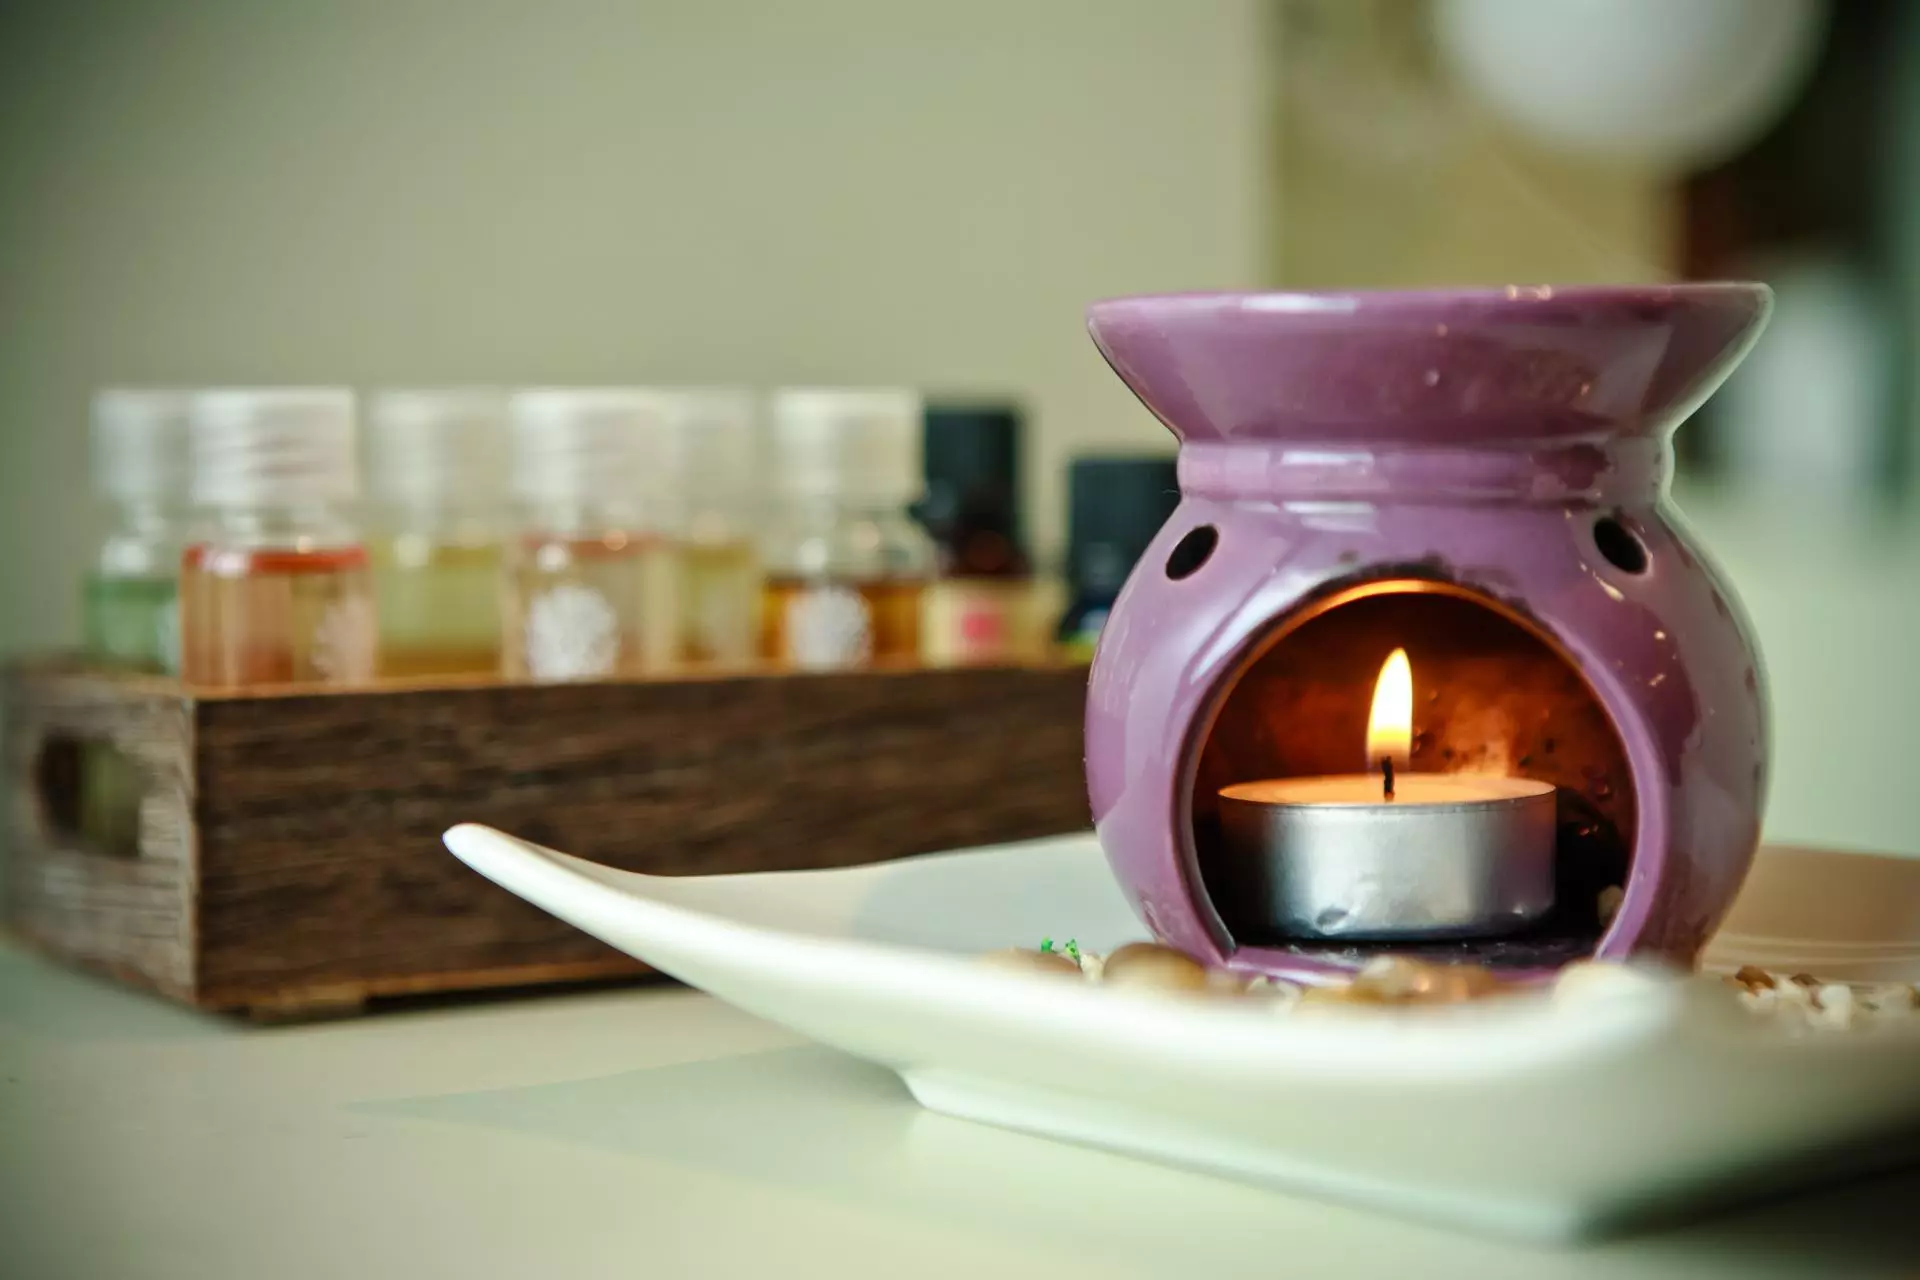 Co voní váš domov? Zajímavé možnosti pro aromatickou terapii pro bydlení